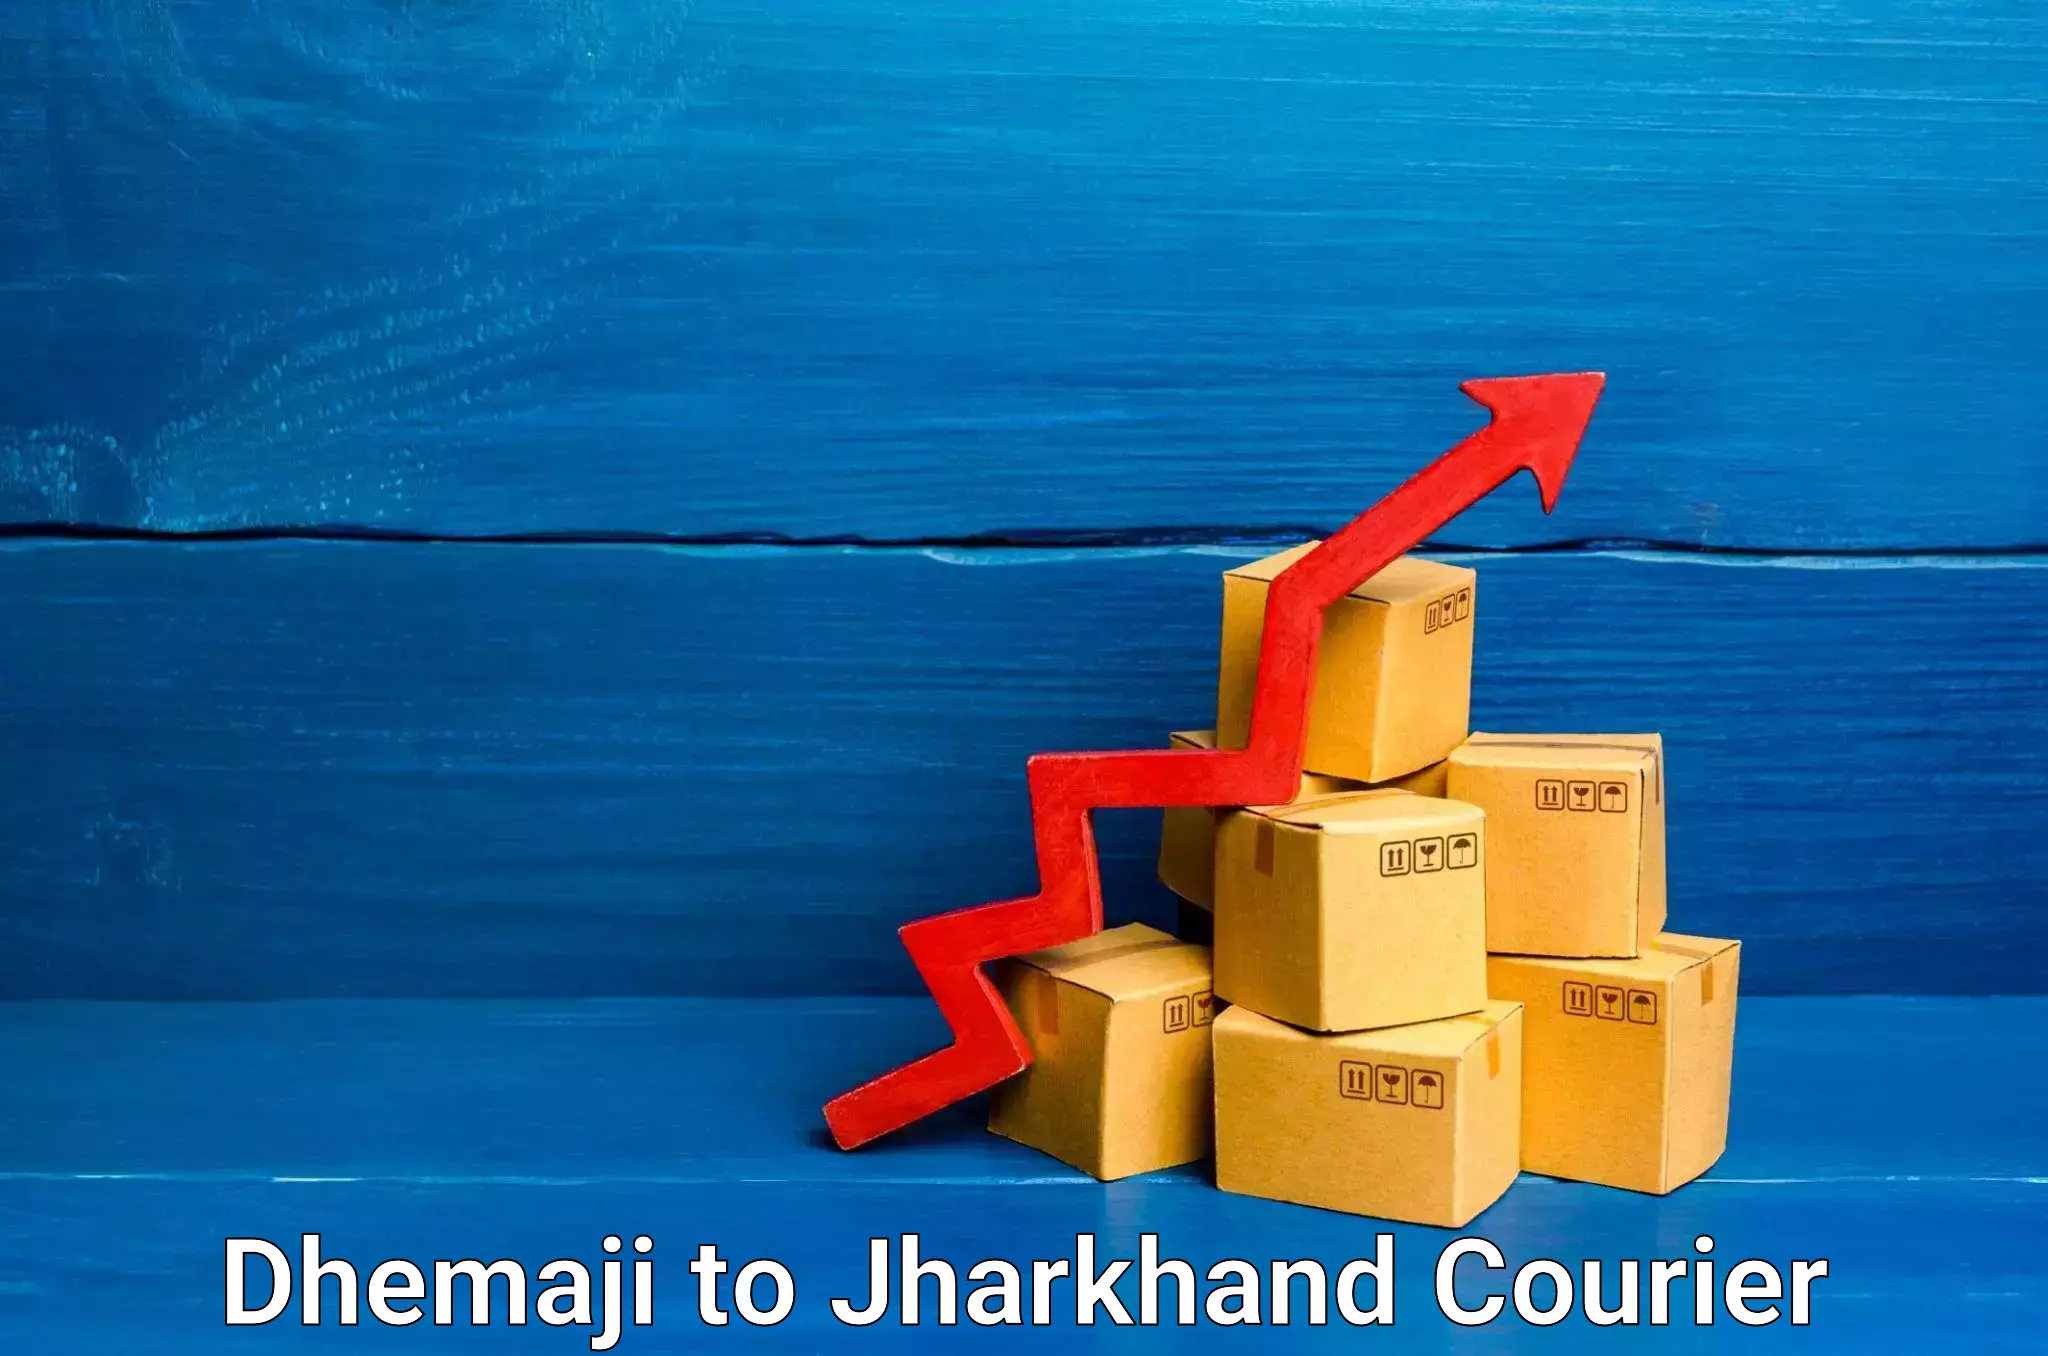 High-speed parcel service Dhemaji to Phusro